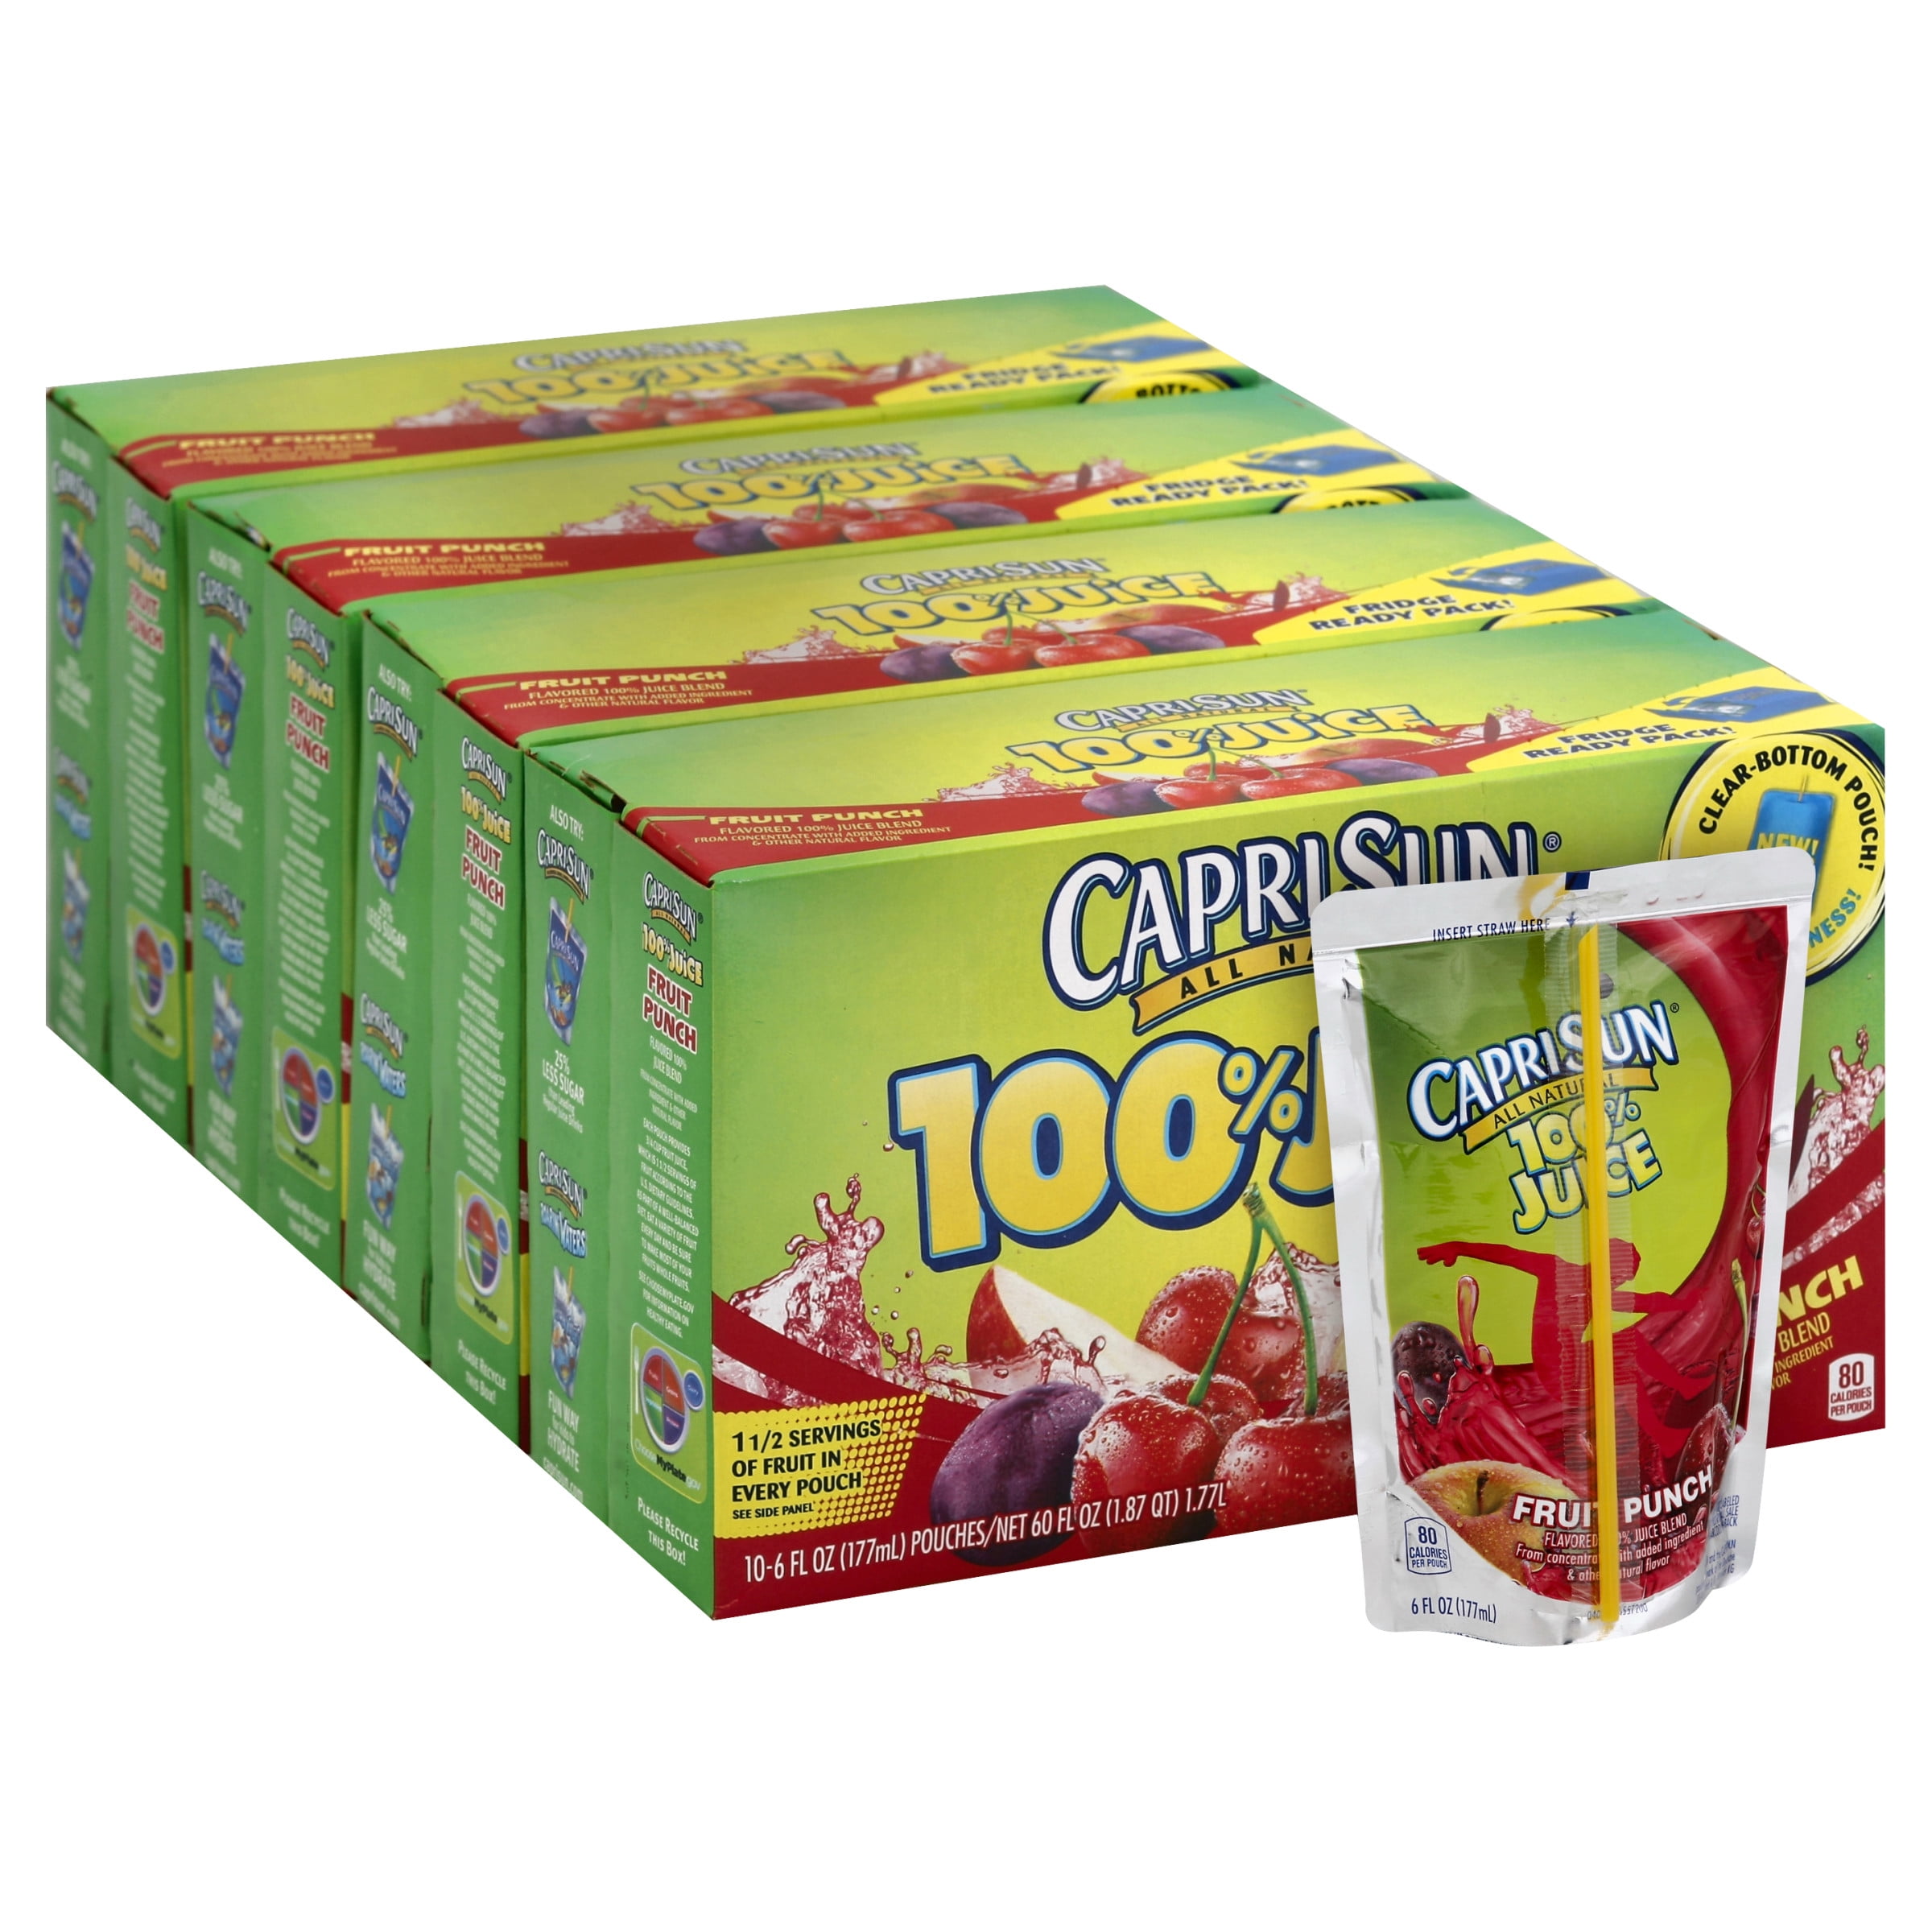 Capri Sun Fruit Punch Juice Drink Blend, 30 ct Box, 6 fl oz Pouches,  caprisun 